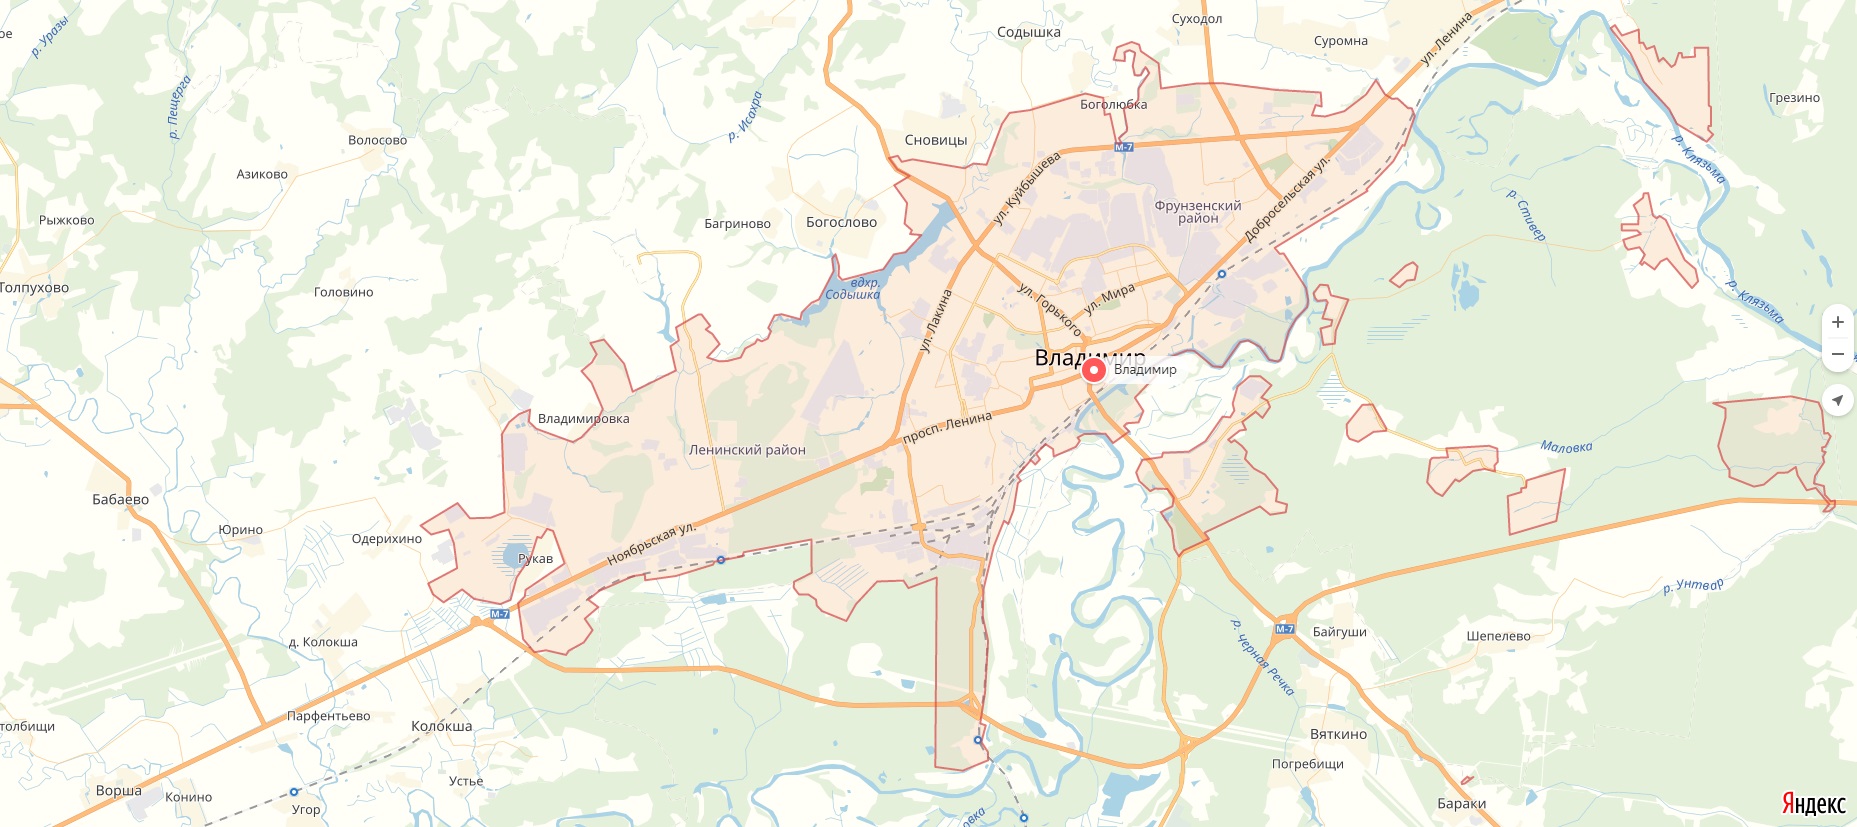 Местоположение владимира. Карта города Владимира с улицами.